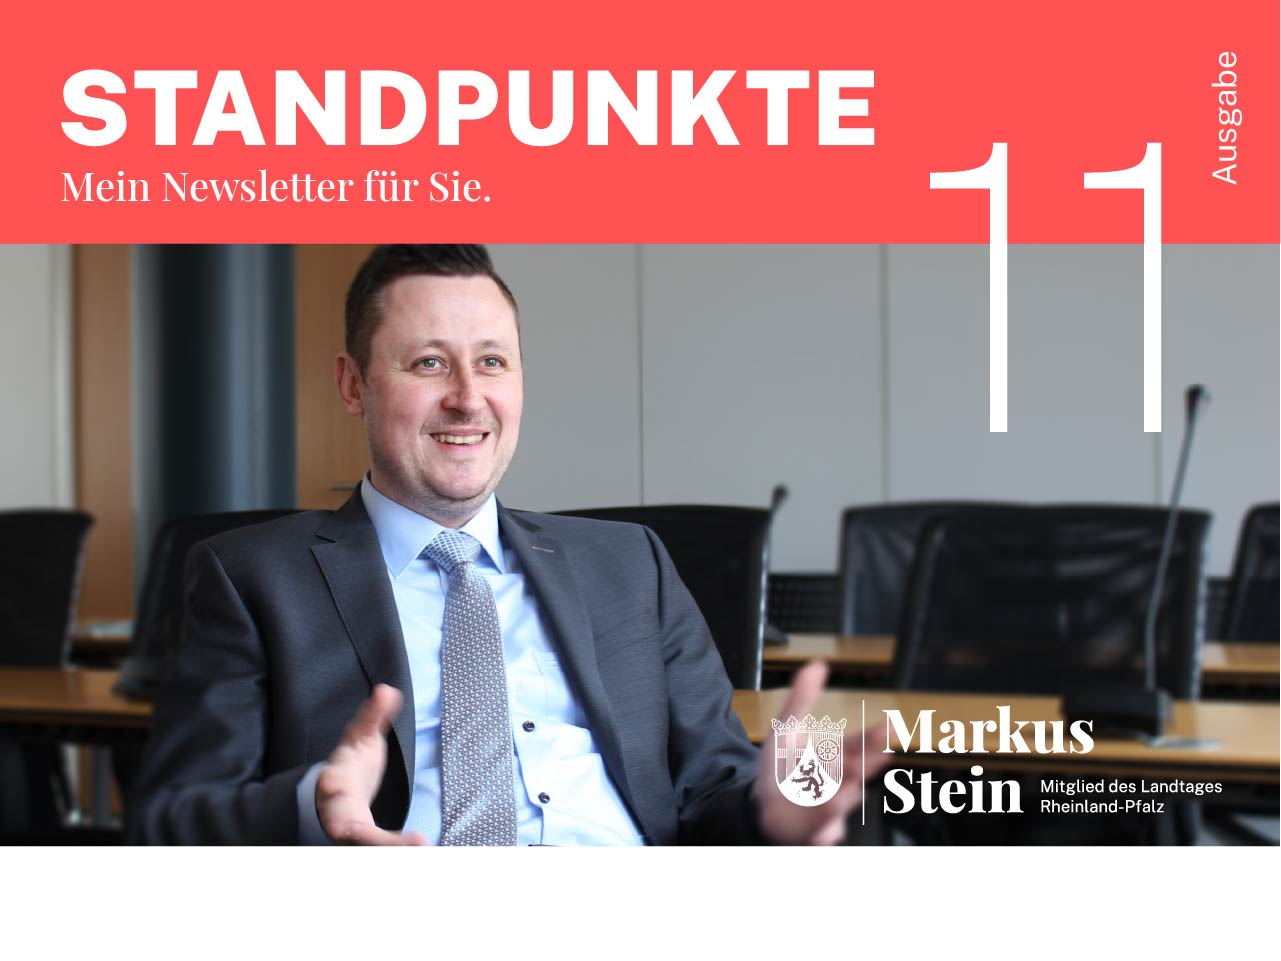 Coverbild, Foto von Markus Stein: Titel Standpunkte, Mein Newsletter für Sie, Ausgabe 11